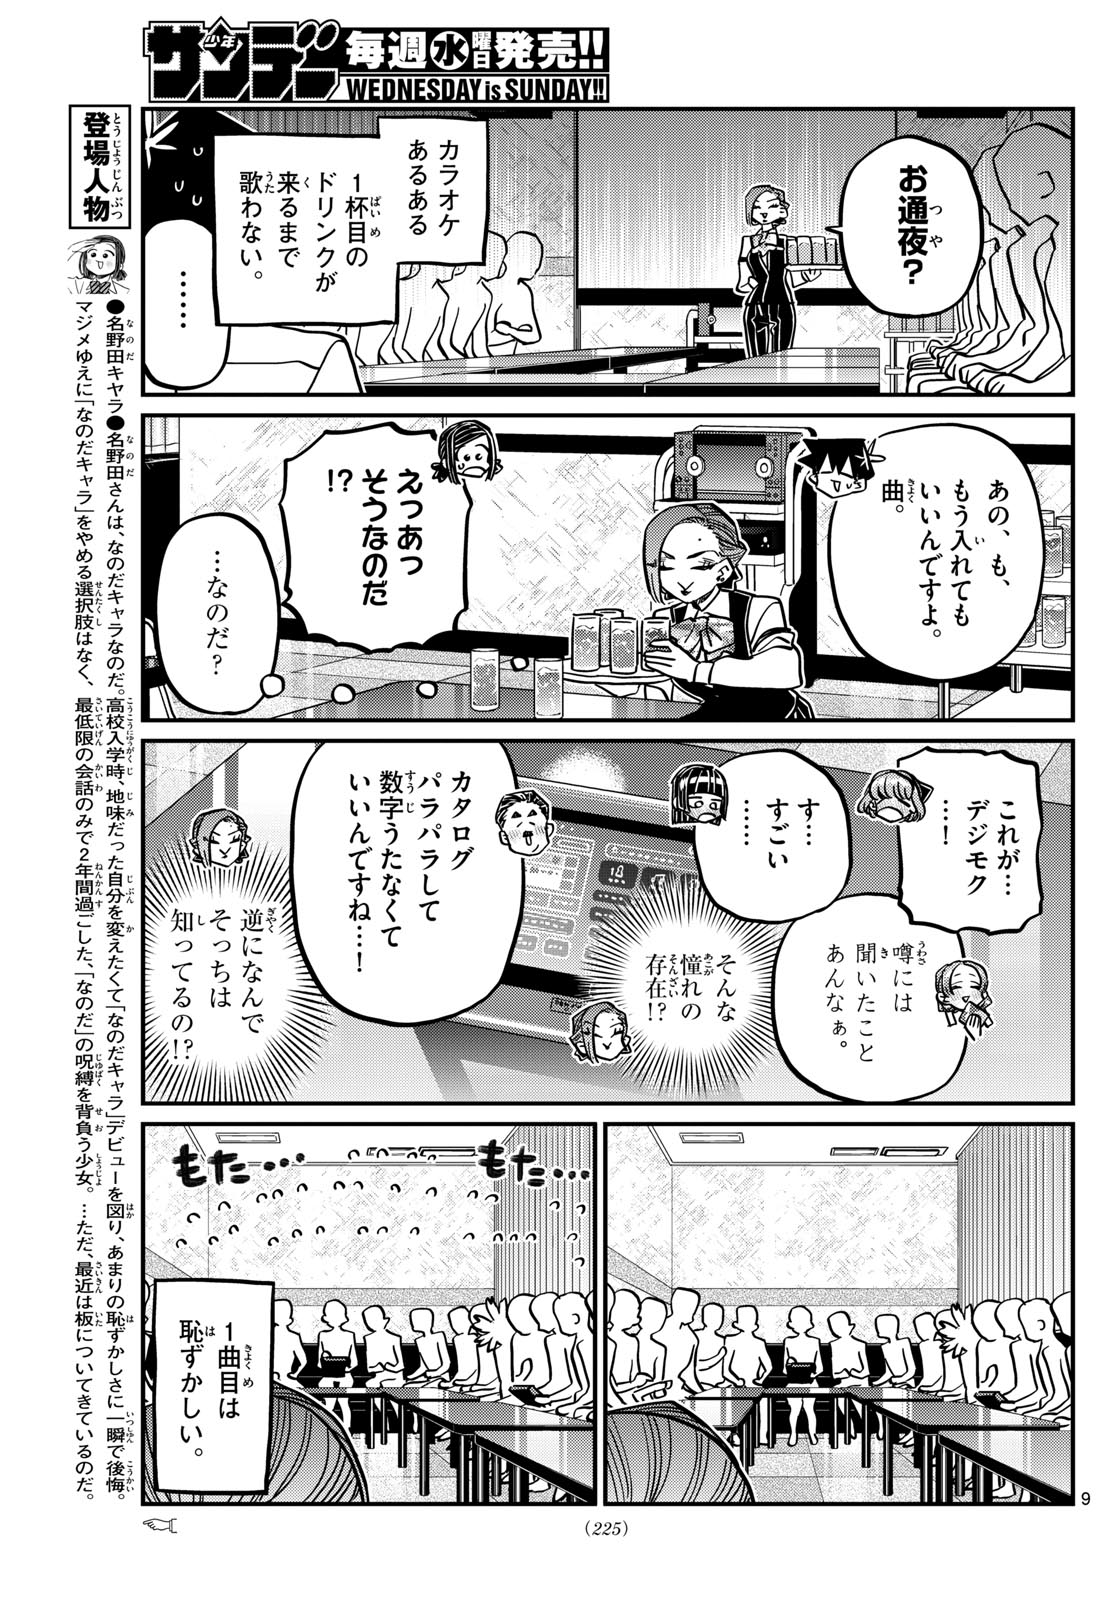 Komi-san wa Komyushou Desu - Chapter 456 - Page 9